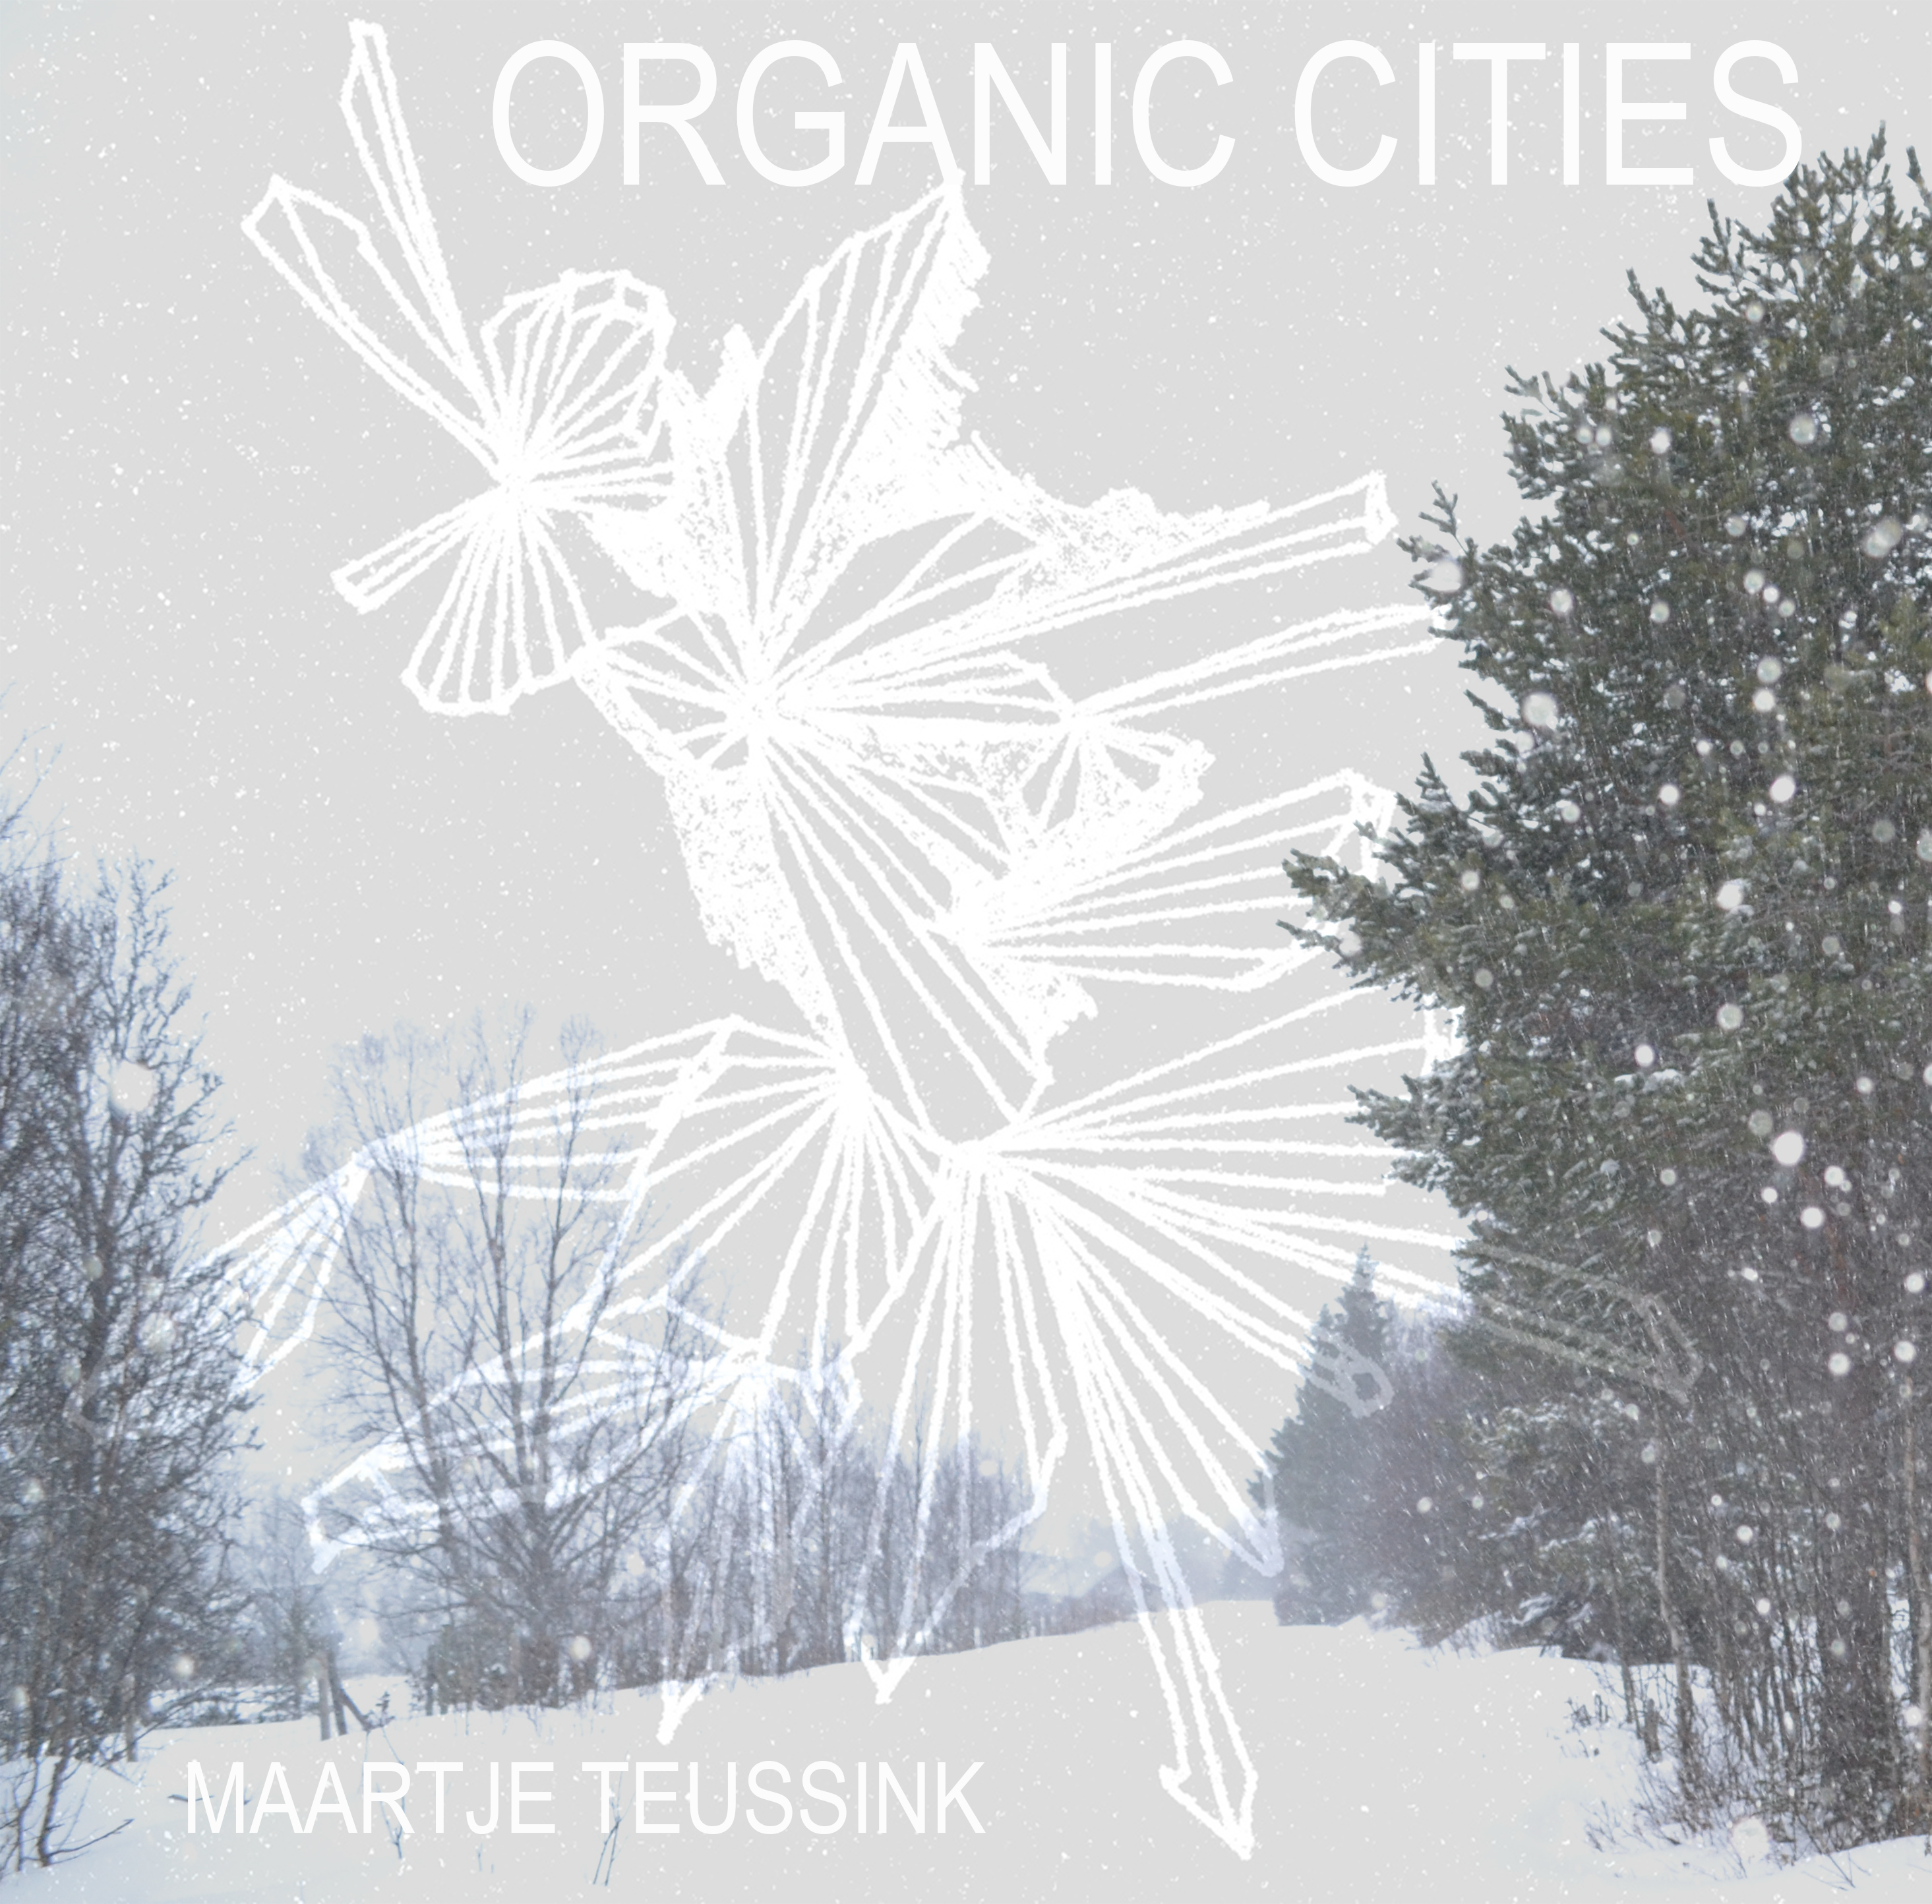 Organic Cities - Album (Digital) 2018